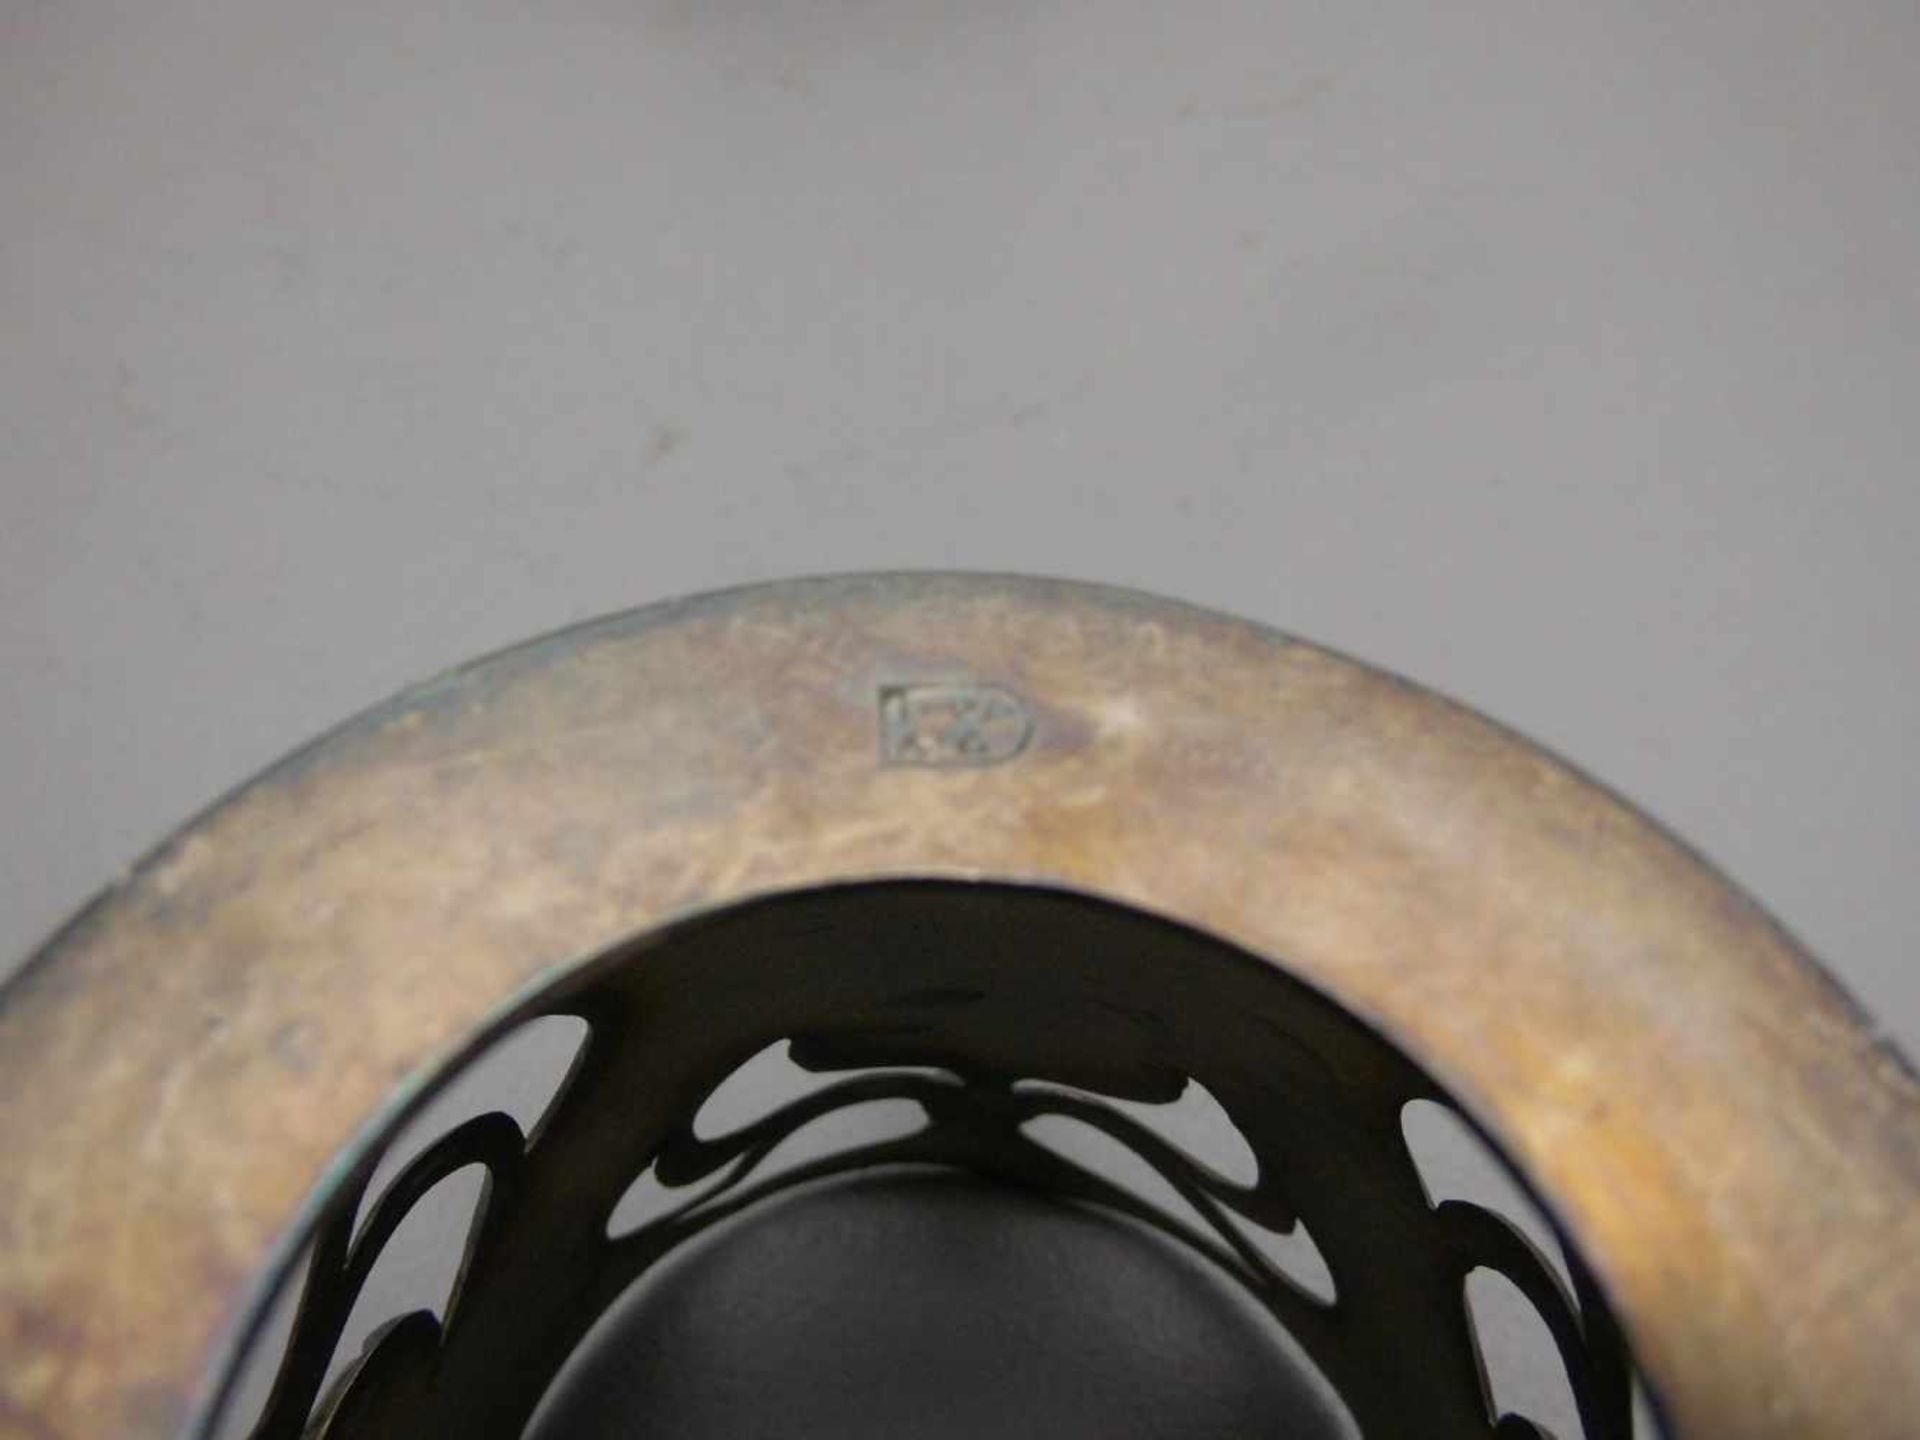 PAAR JUGENDSTIL - GLASHALTER, silberfarbenes Metall, durchbrochen und reliefiert gearbeitet mit - Bild 3 aus 4